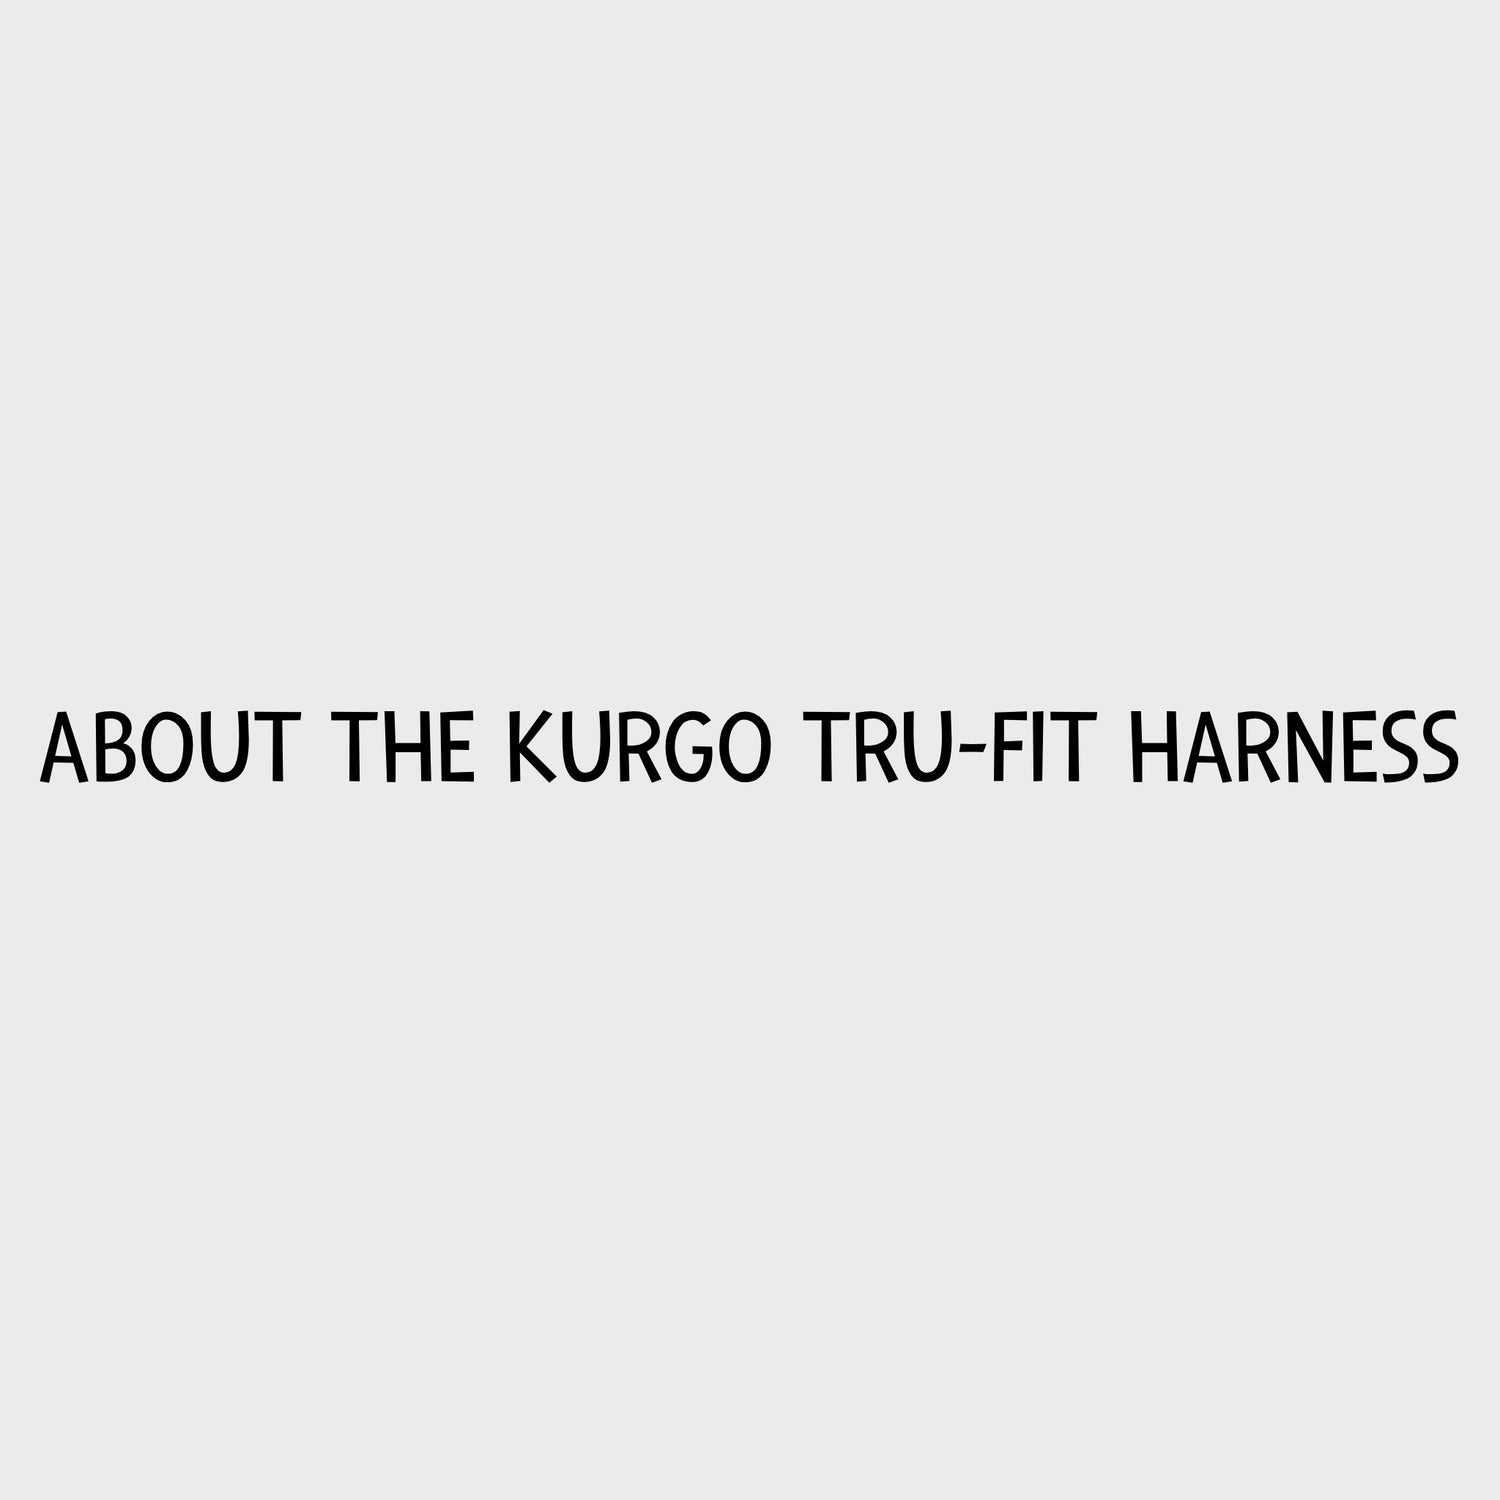 Video - Kurgo Tru-Fit Harness